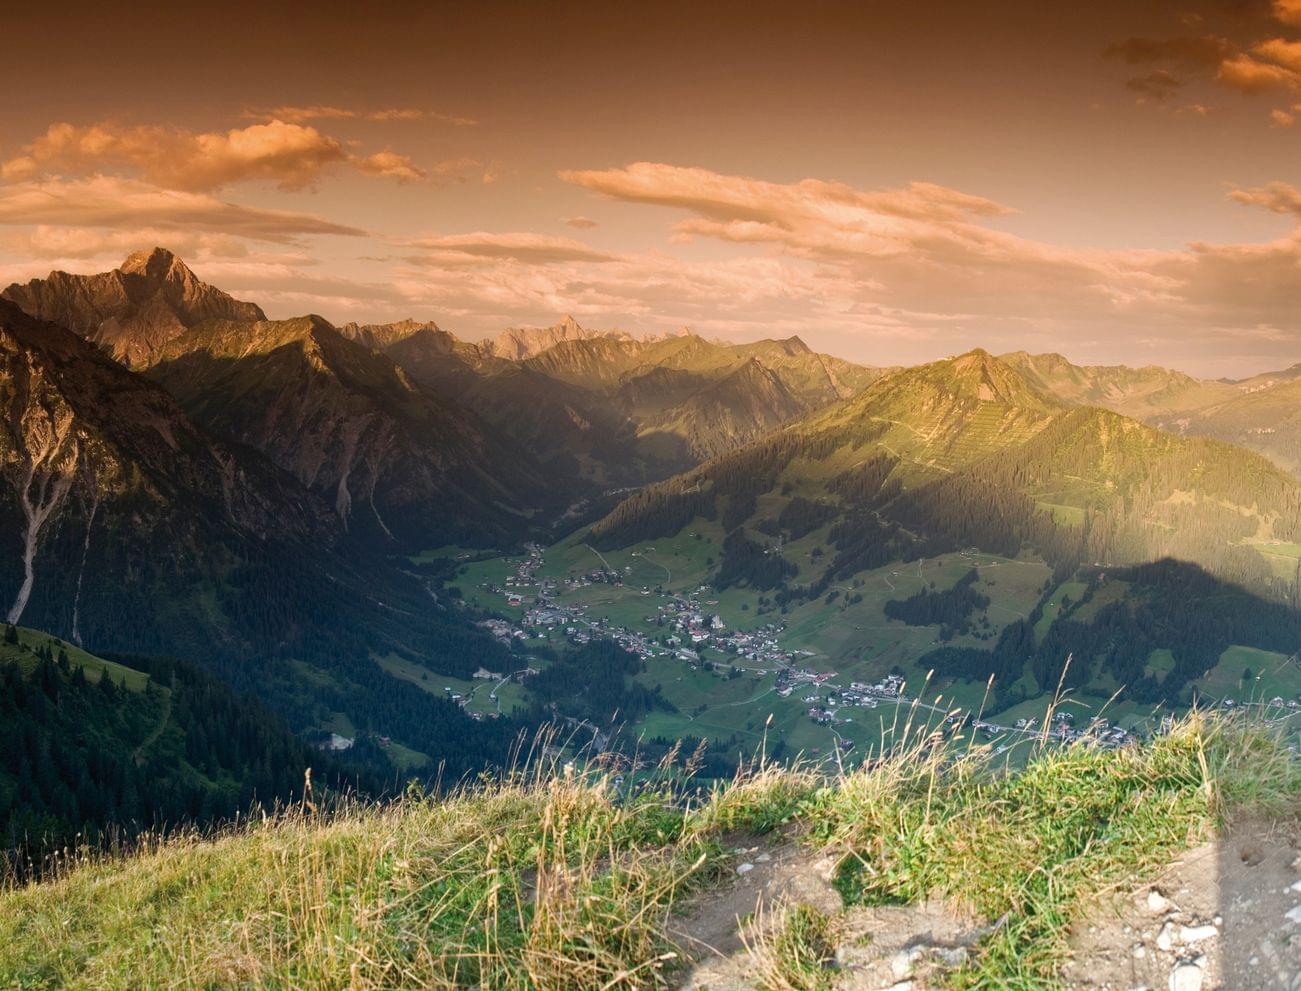 Mountain panorama in the Kleinwalsertal valley, Austria